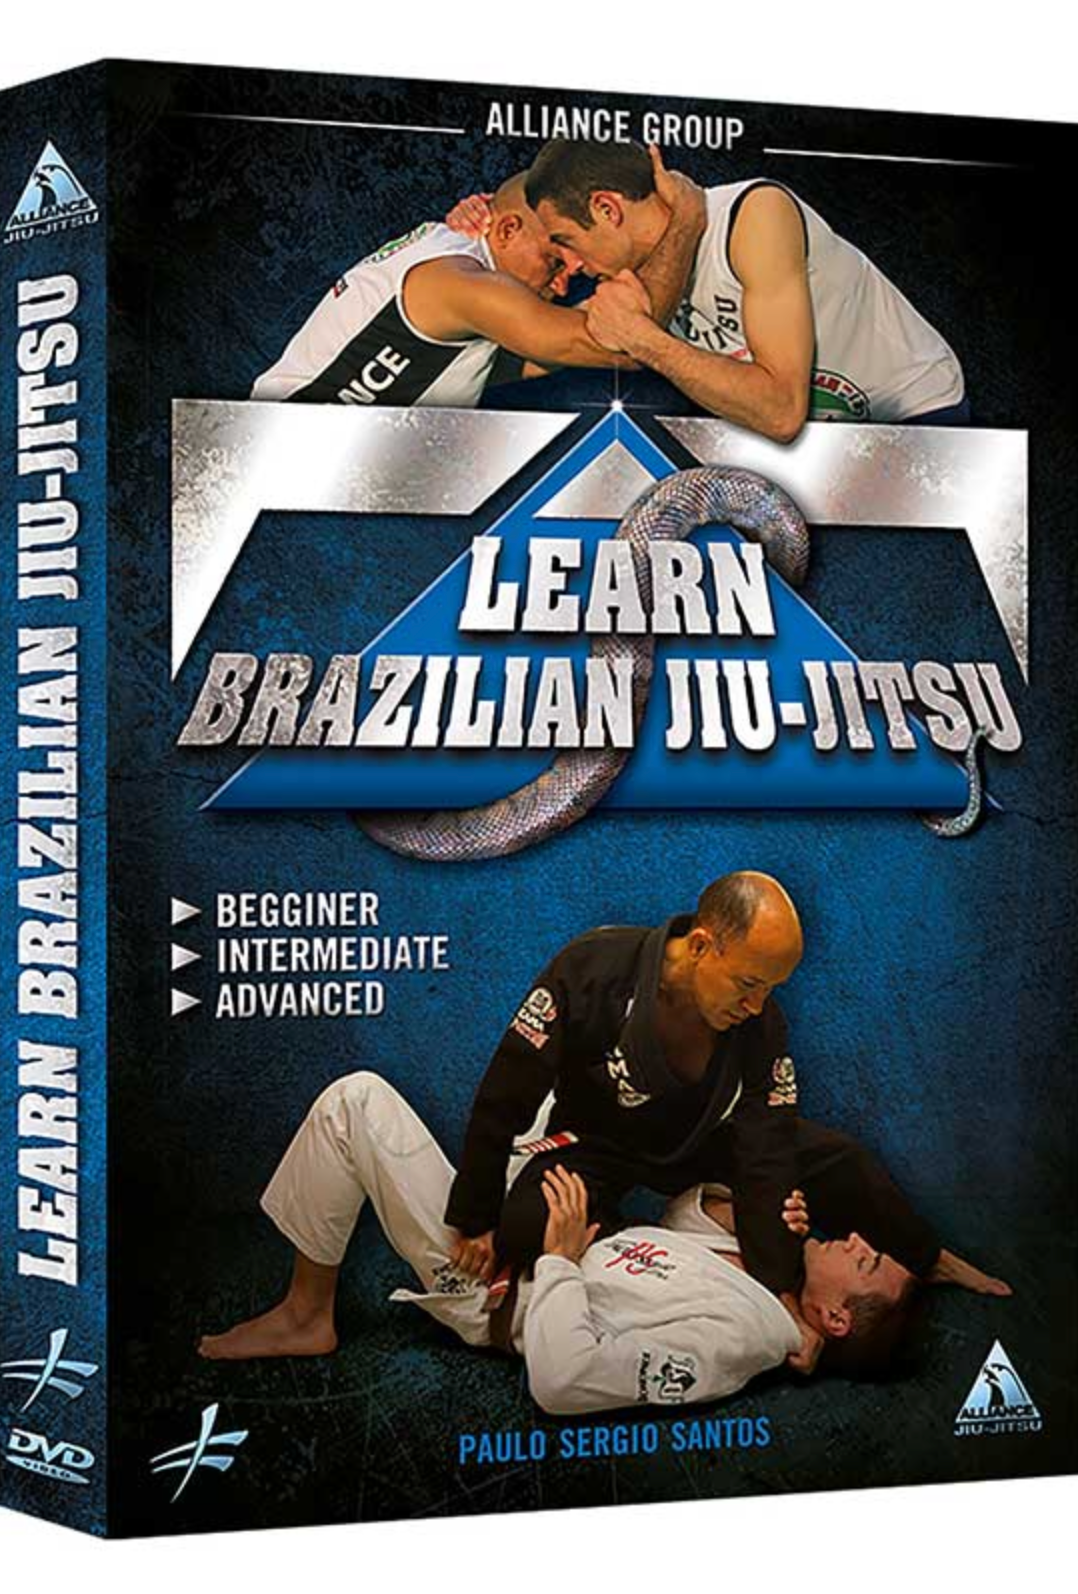 ブラジリアン柔術を学ぶ: 初心者から上級者まで DVD パウロ セルジオ サントス著